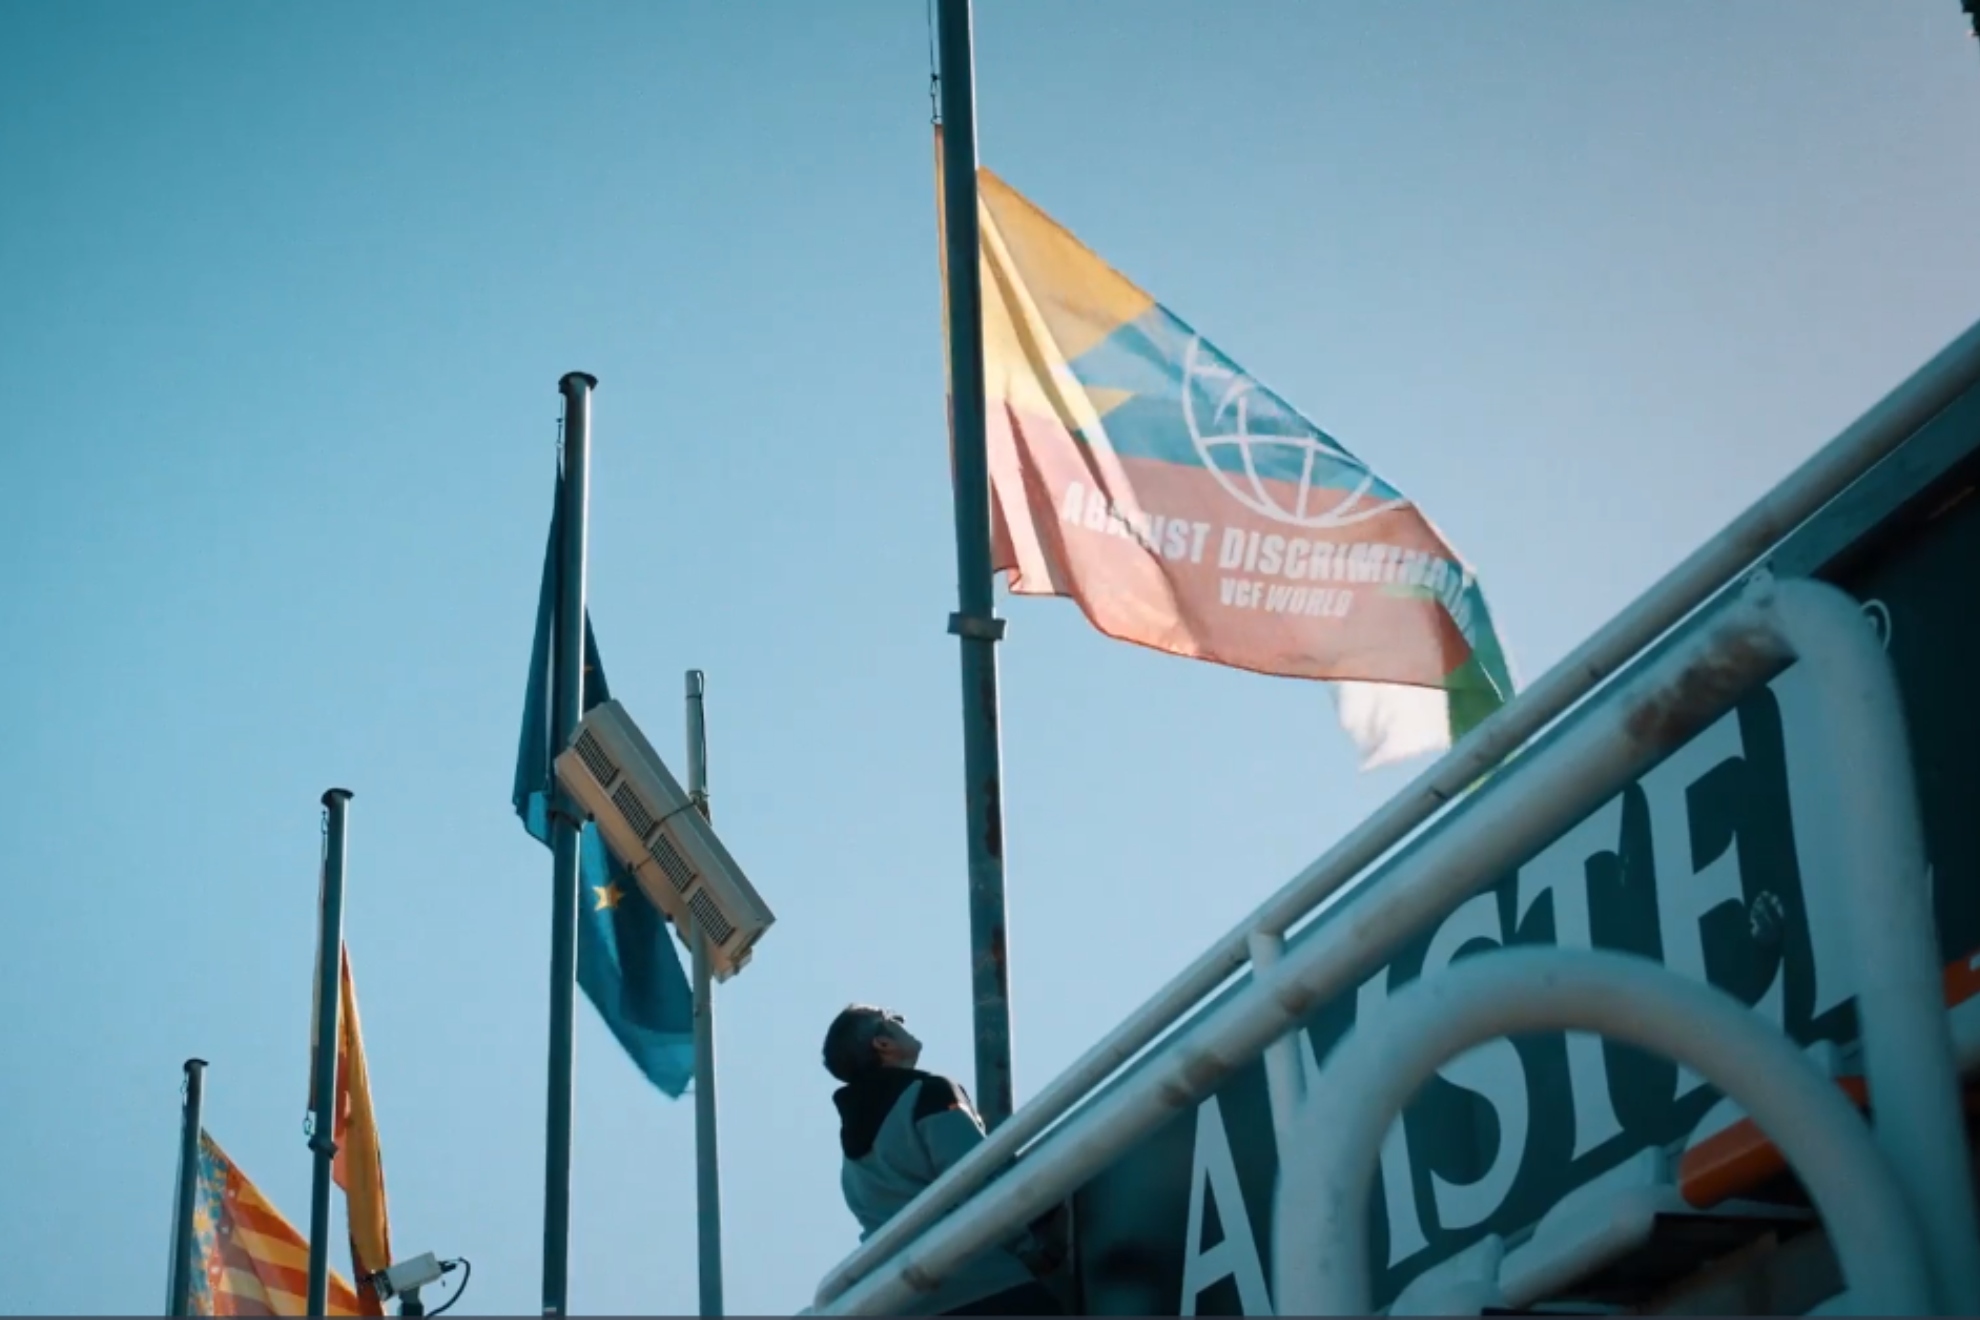 Mestalla estrena bandera antes del regreso de Vinicius: Valientes para declararnos en contra de cualquier discriminación